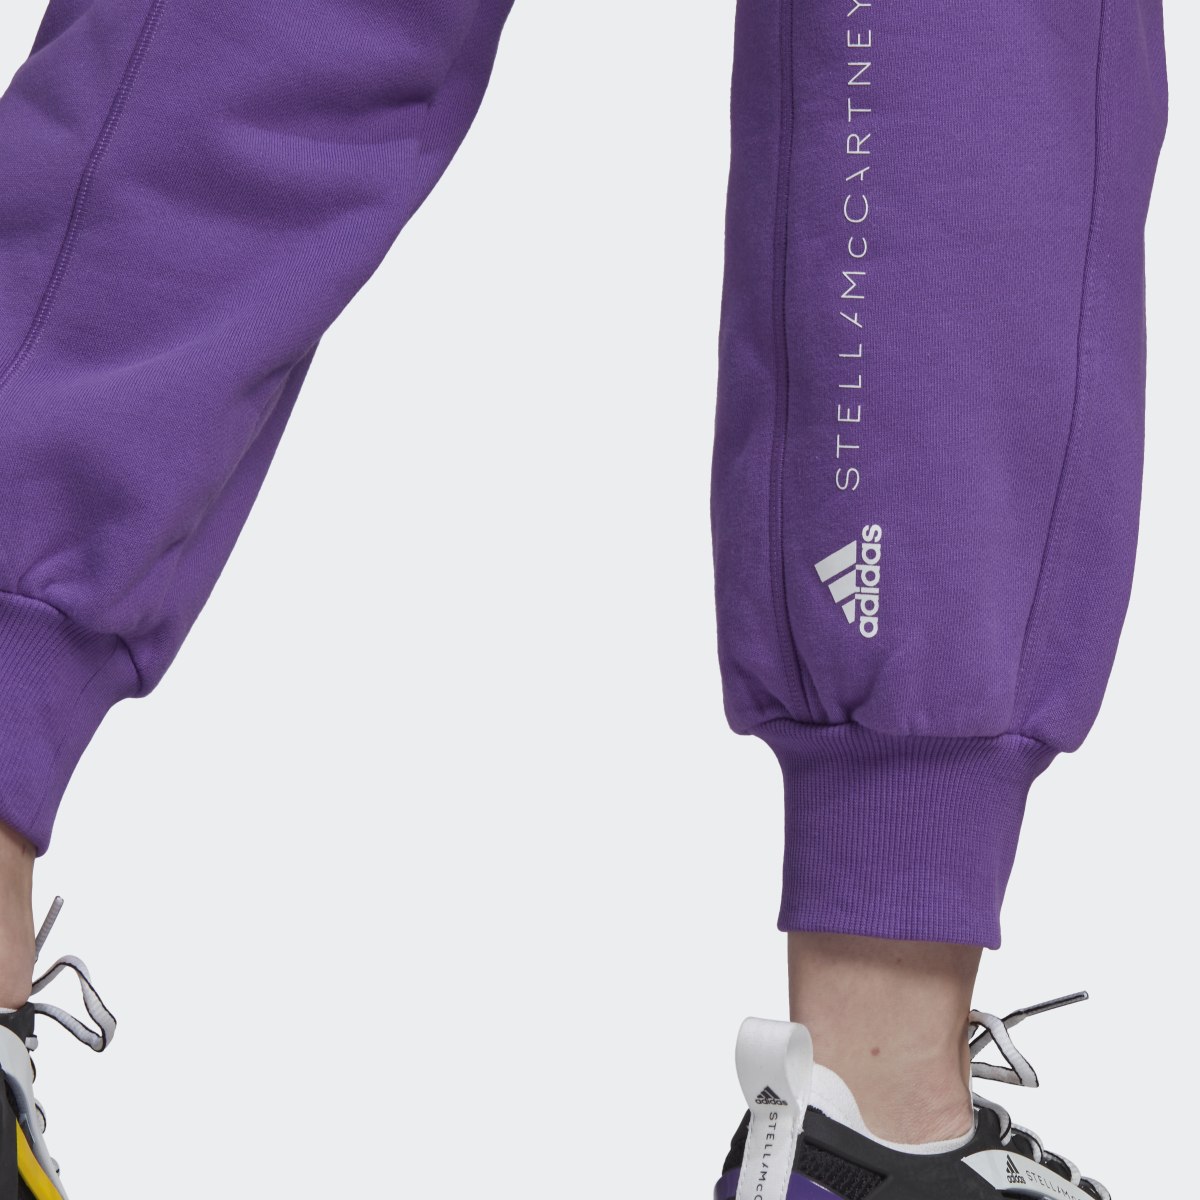 Adidas by Stella McCartney Pants. 7